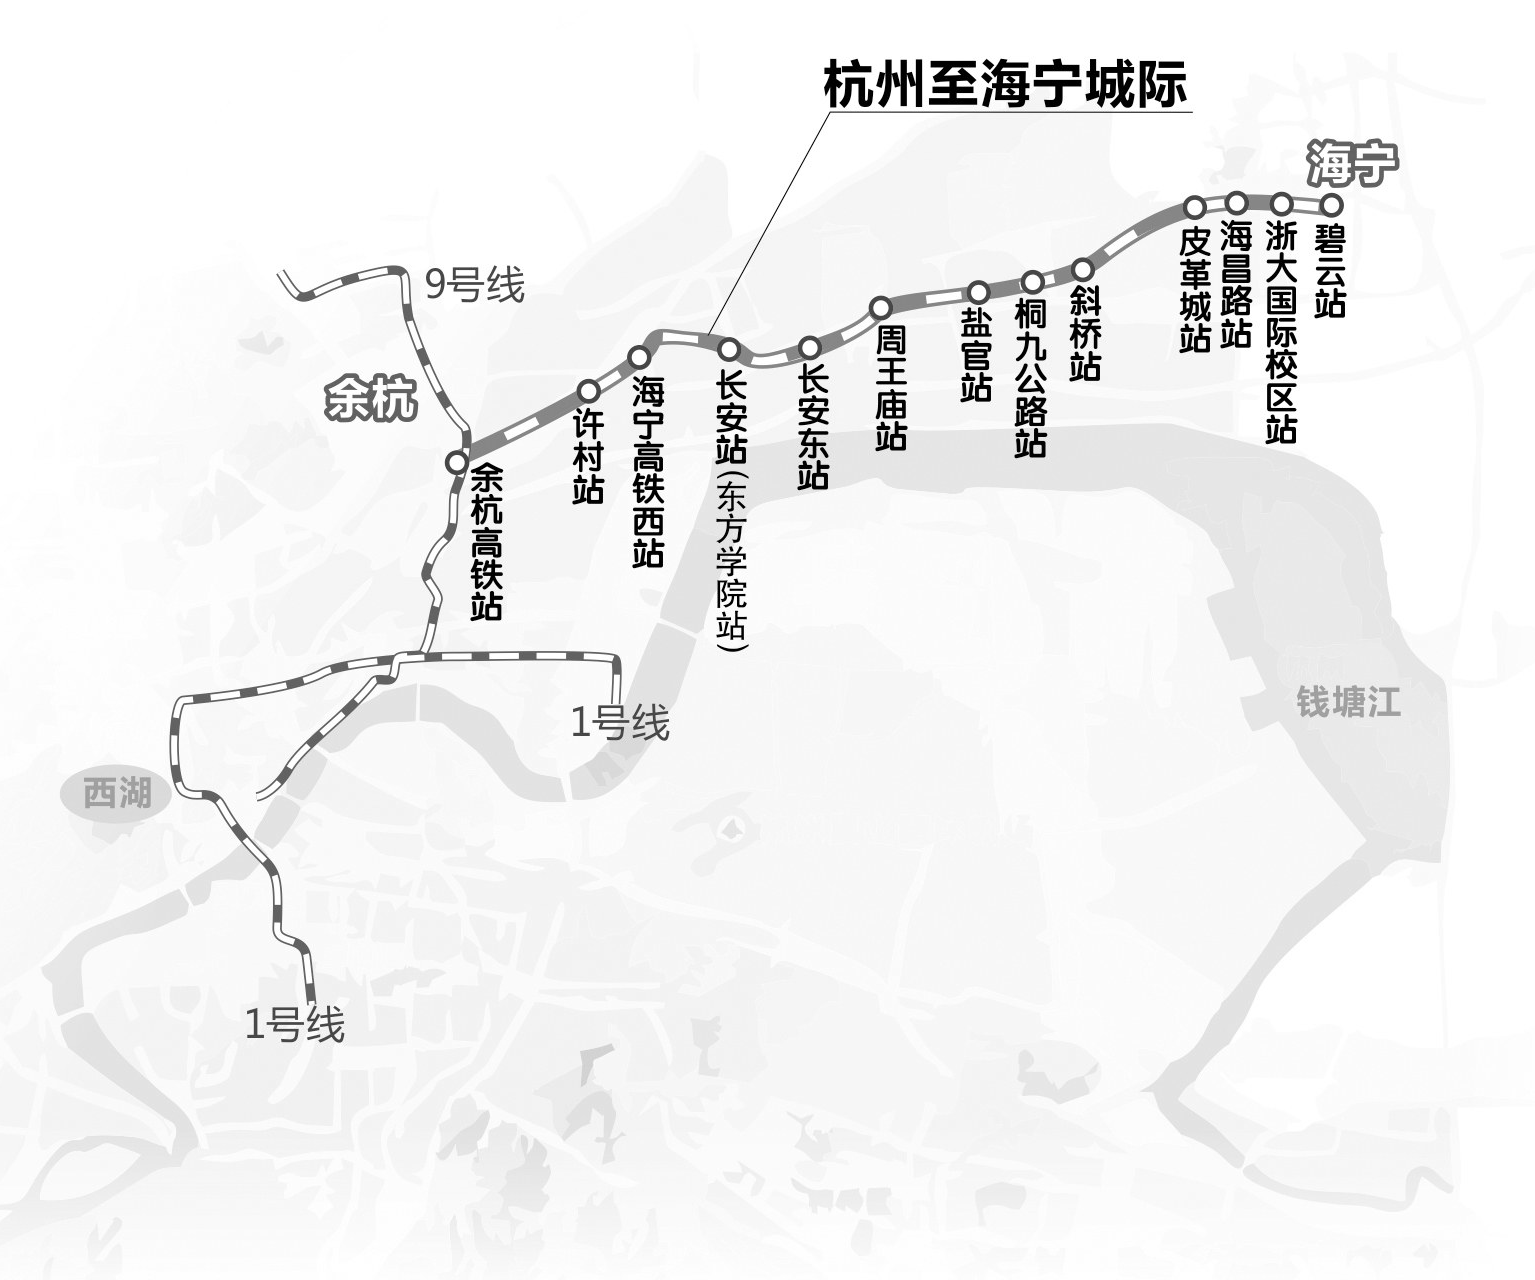 杭海城铁开始热滑杭安城铁已纳入规划